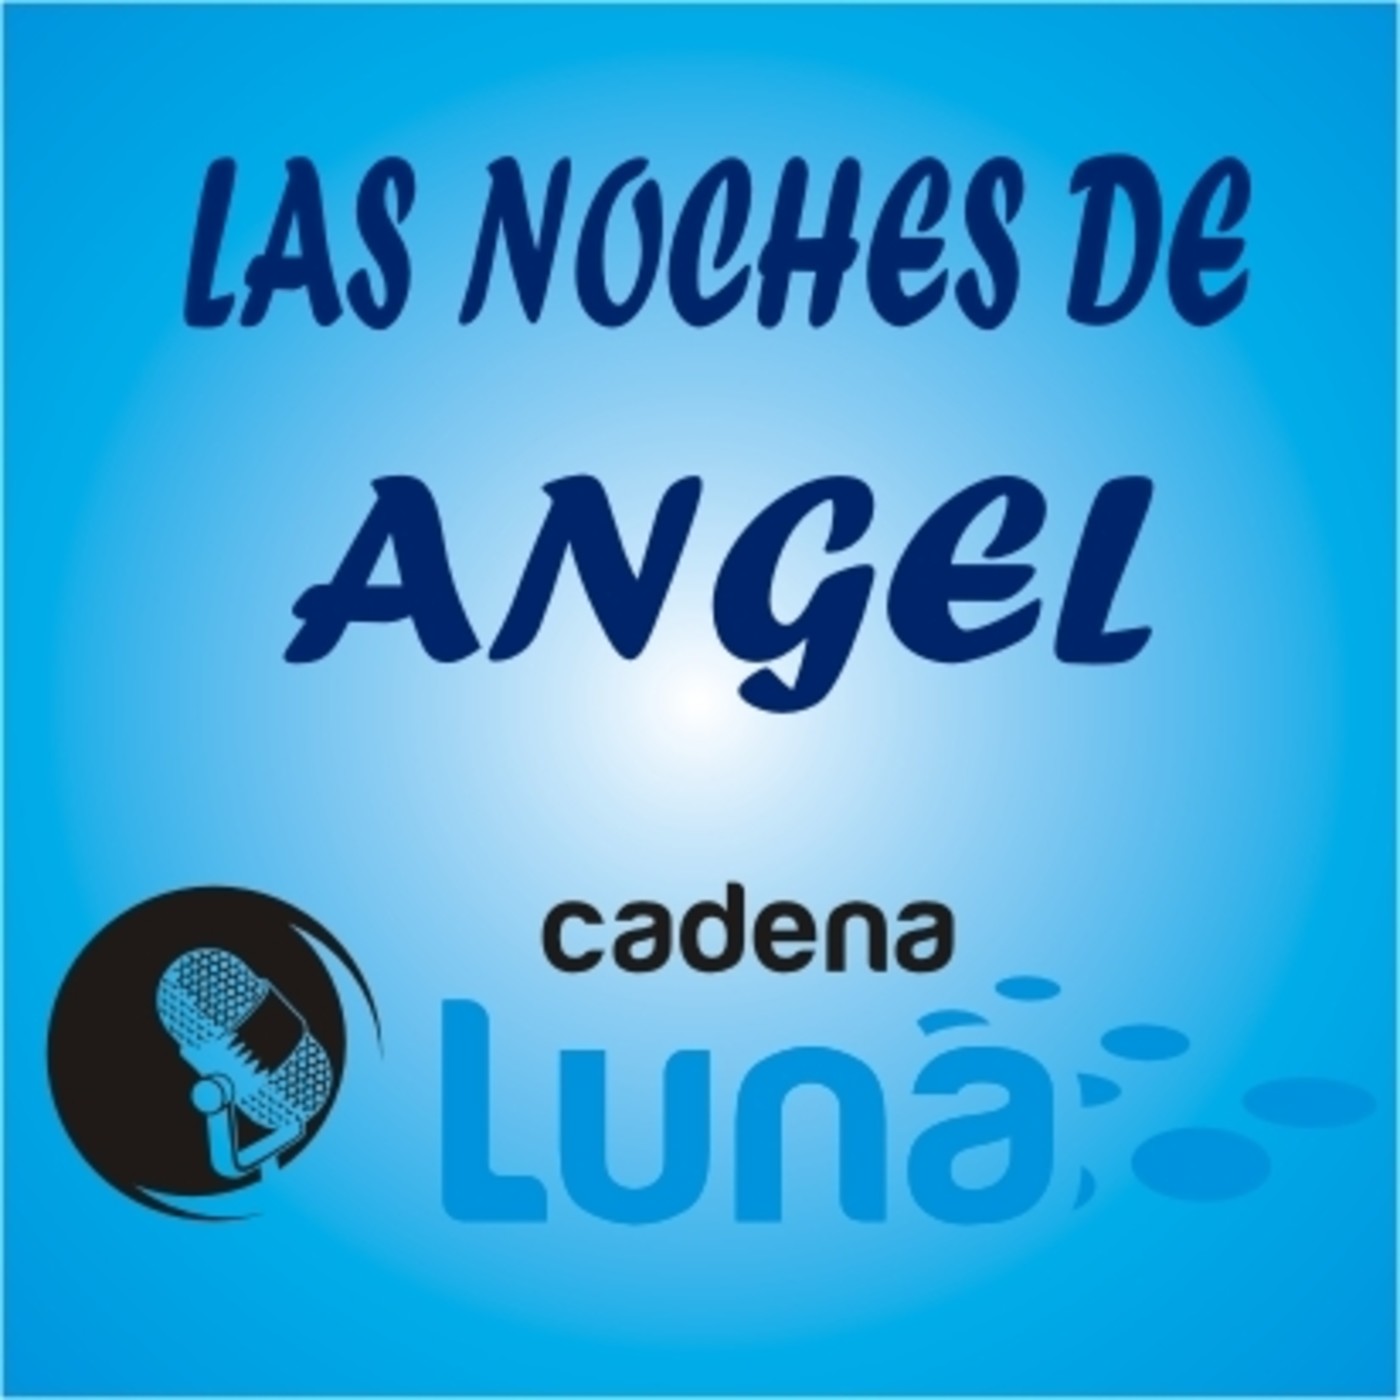 Las noches de Angel cadena luna - 18 - 04 - 24